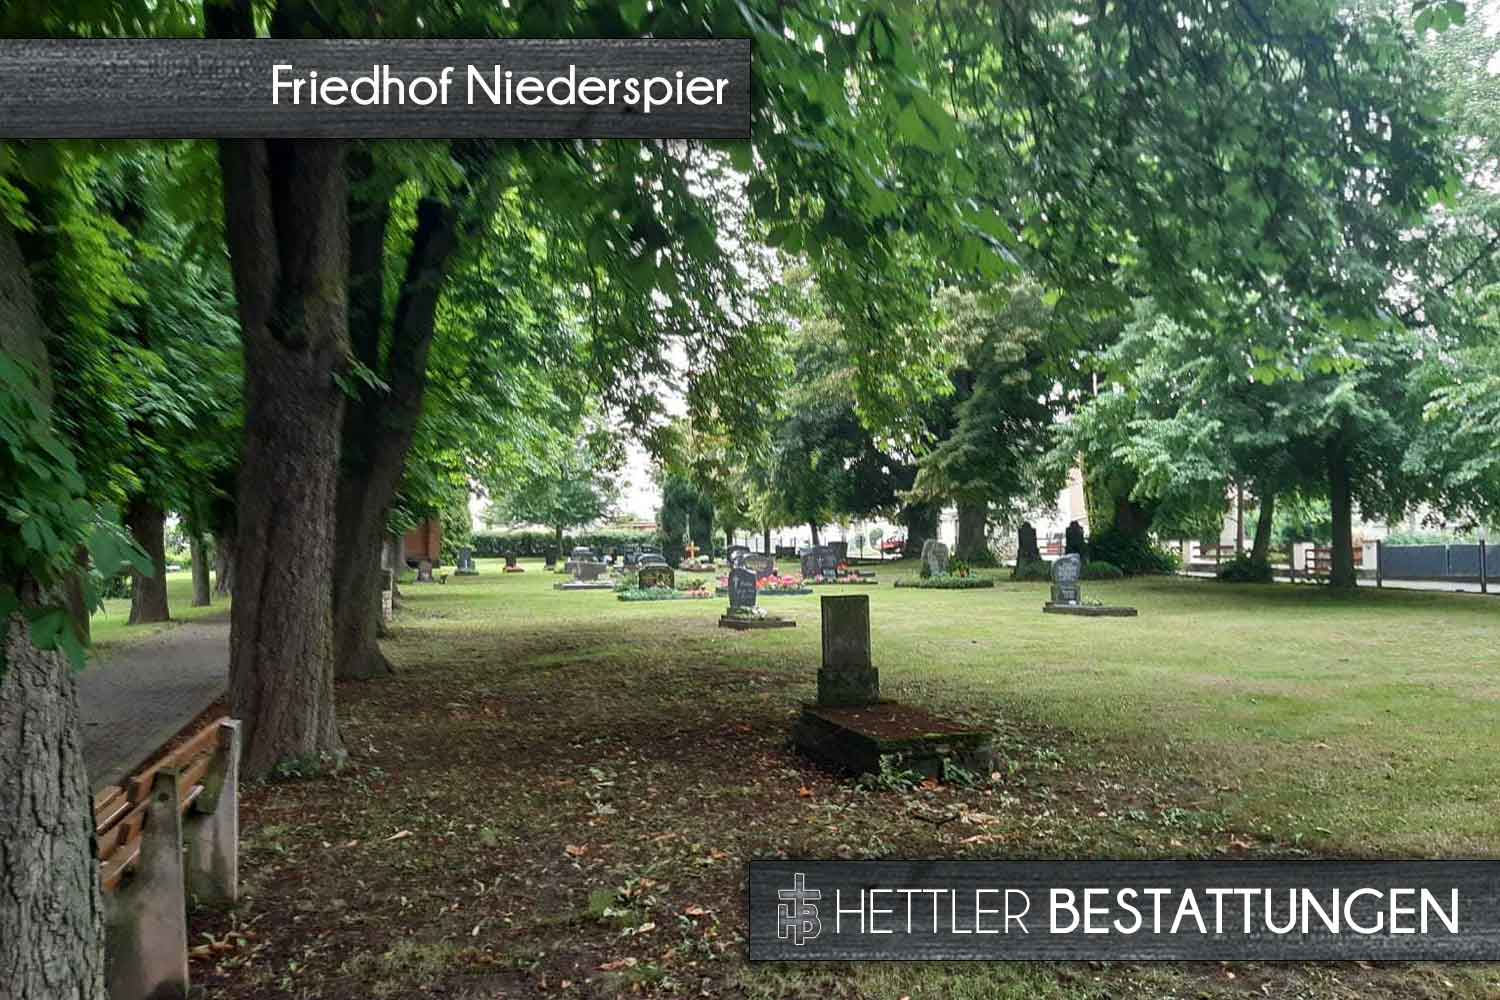 Friedhof in Niederspier. Ihr Ort des Abschieds mit Hettler Bestattungen.